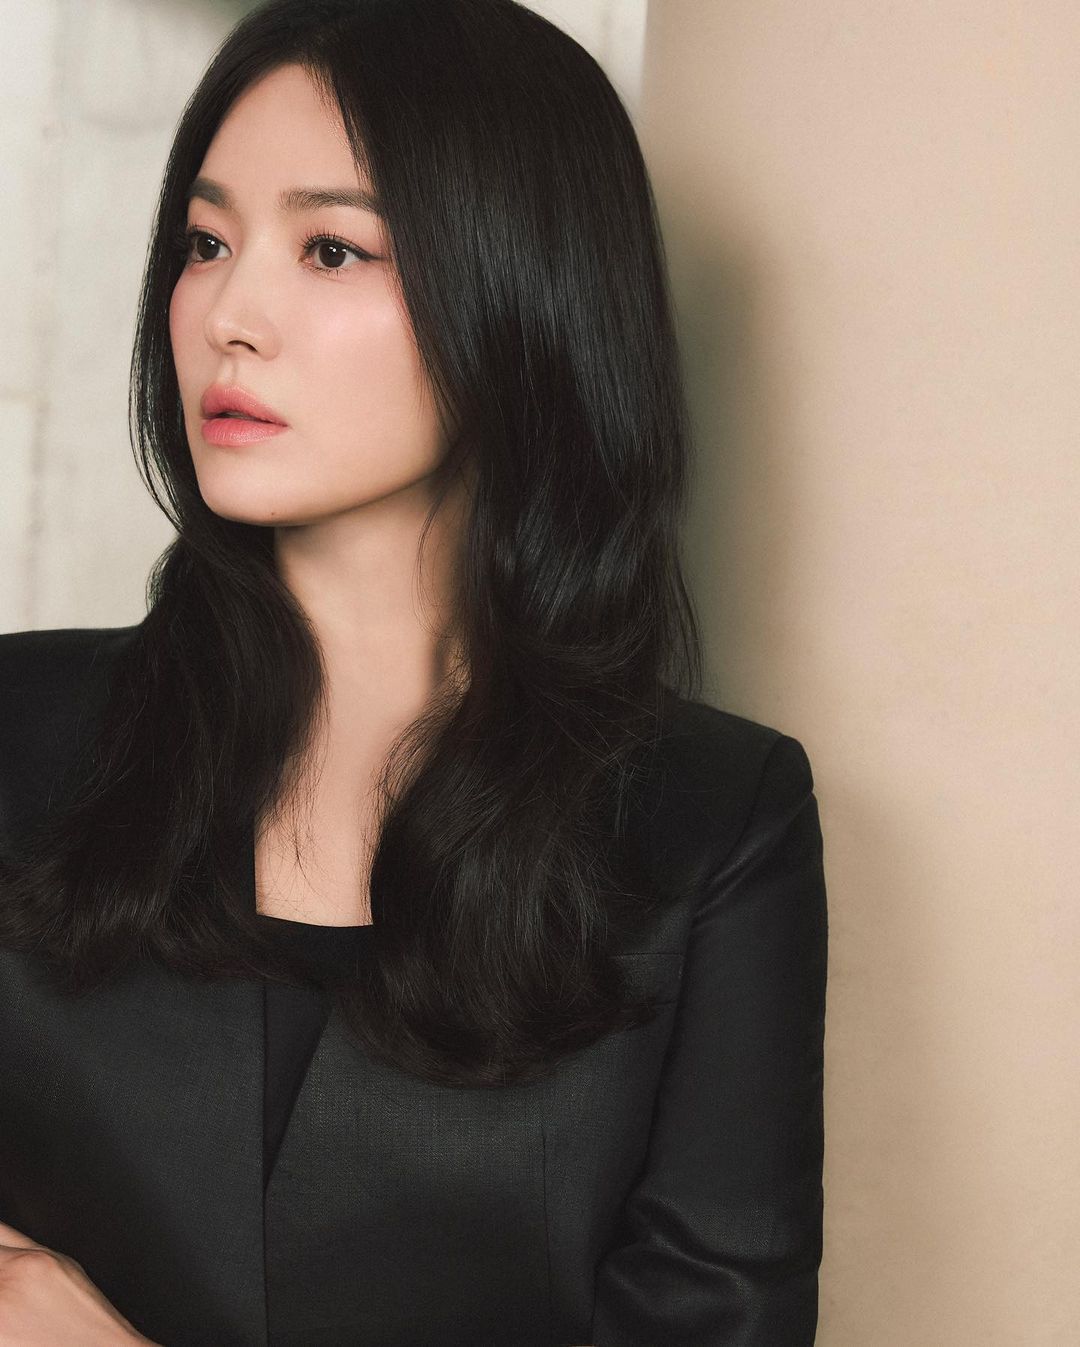 Song Hye Kyo khiến người hâm mộ thổn thức với vẻ đẹp không tuổi, đúng chuẩn tượng đài nhan sắc xứ Hàn- Ảnh 1.